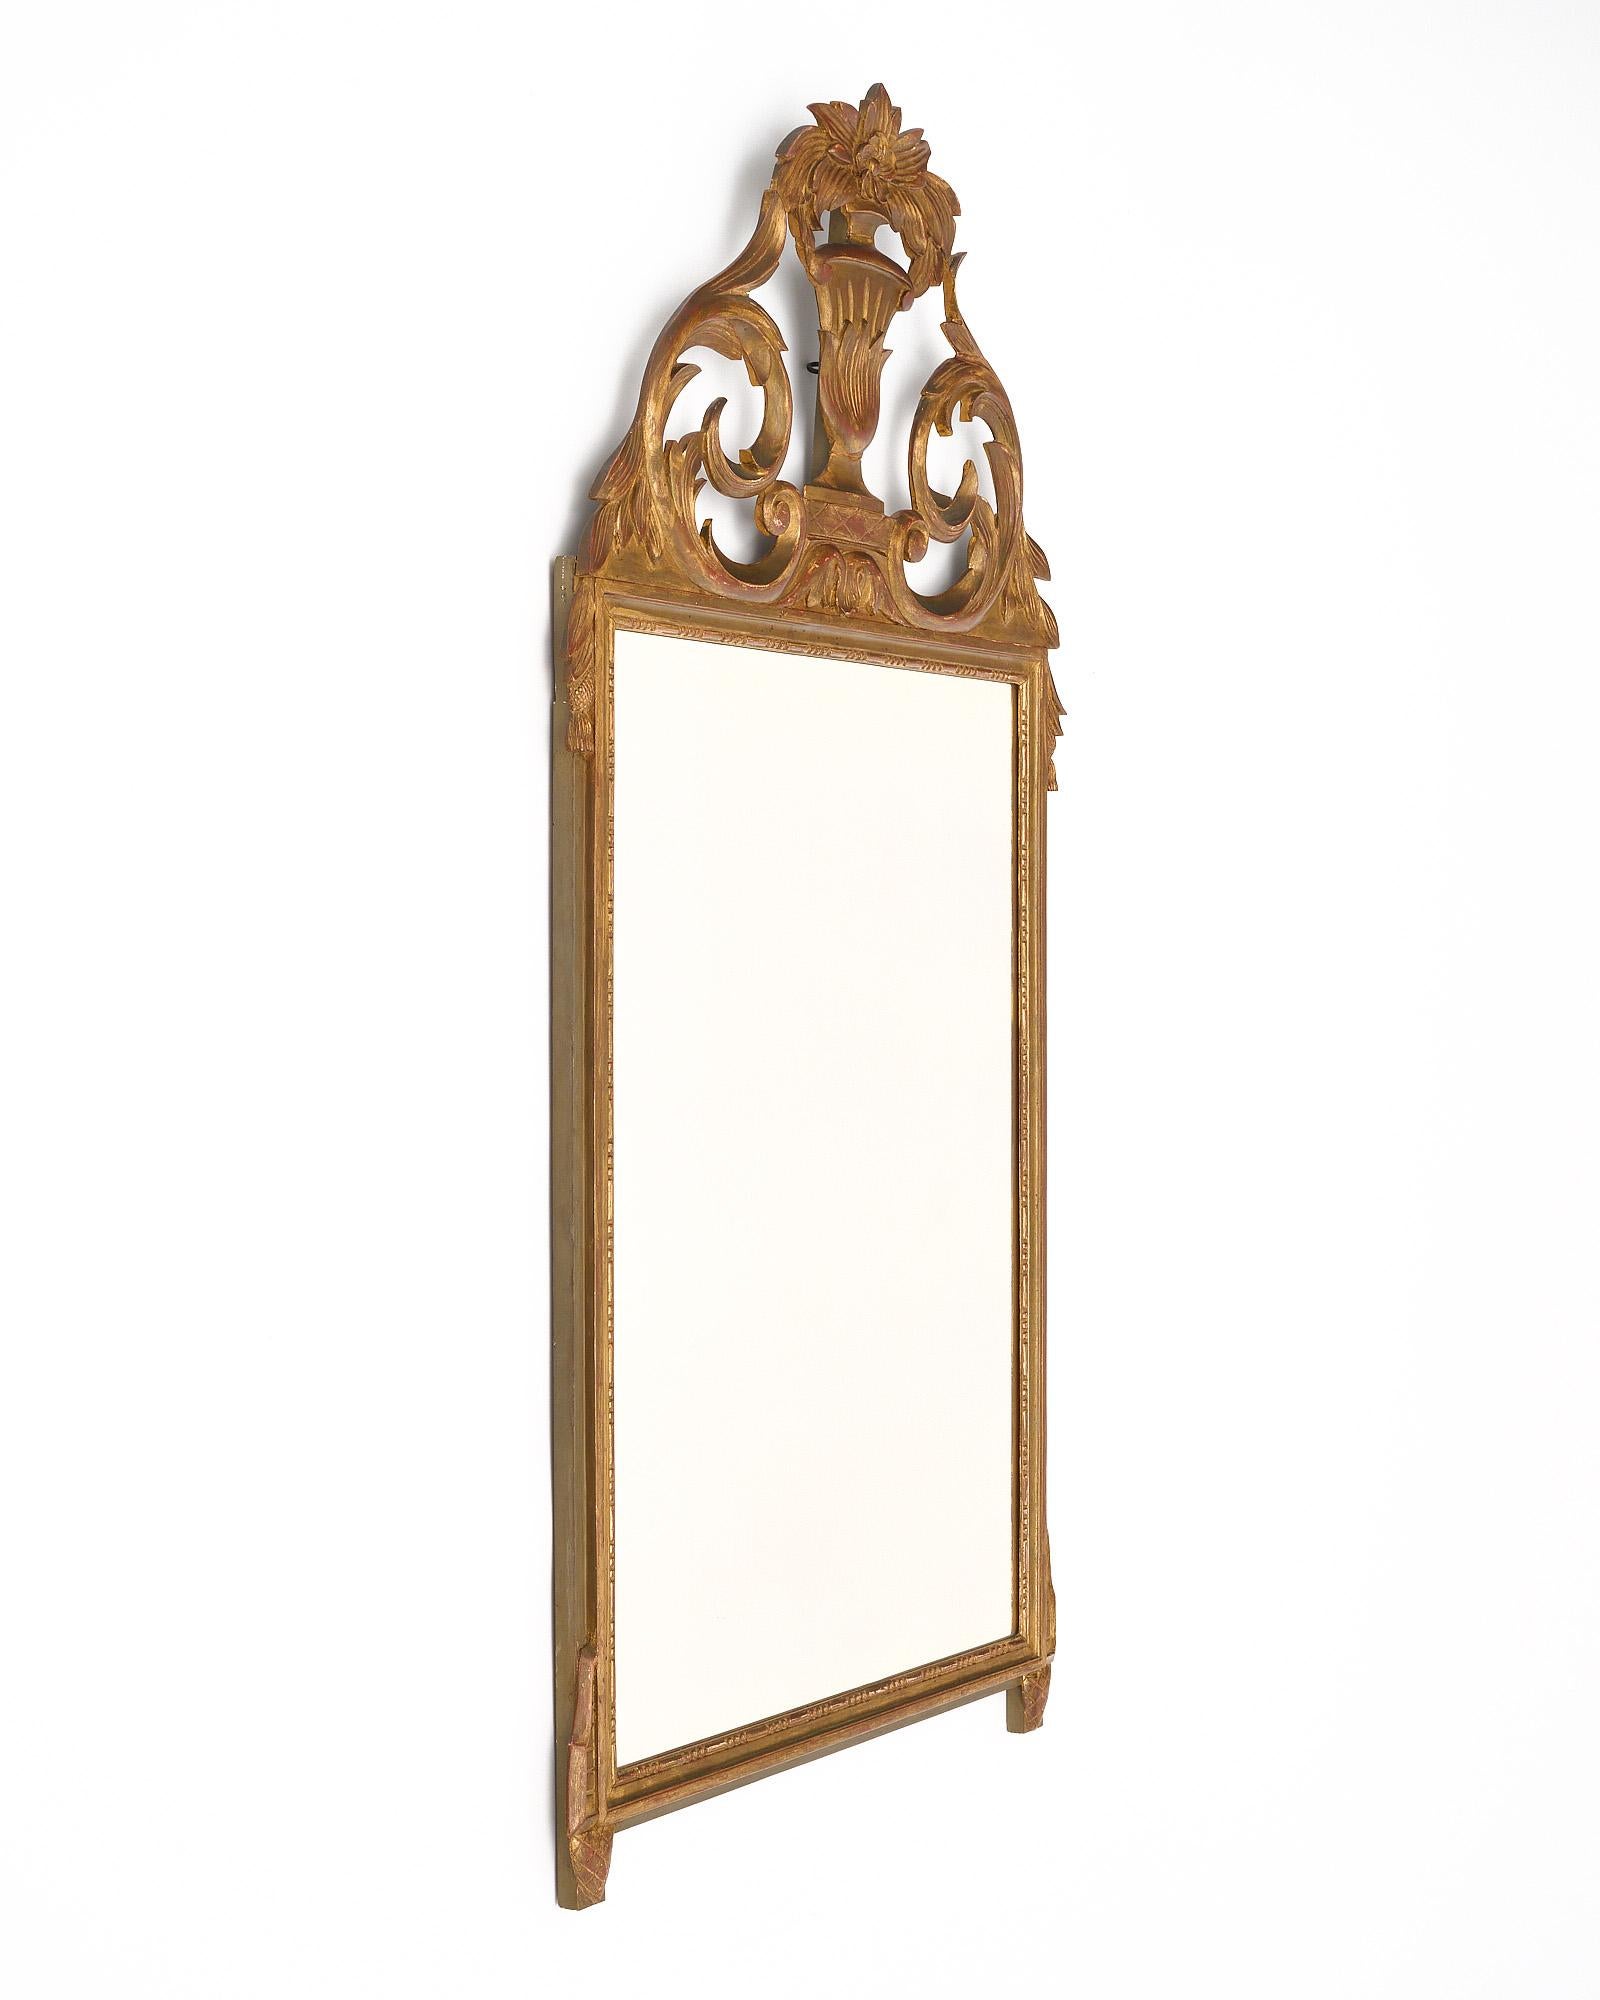 Spiegel aus Frankreich im Stil Louis XVI. Dieses Stück ist aus handgeschnitztem Holz mit Stuck und einer Front mit einer Urne, floralen Motiven und Lorbeerblättern gefertigt. Die 24-karätige Blattvergoldung ist original. Am Rahmen sind einige